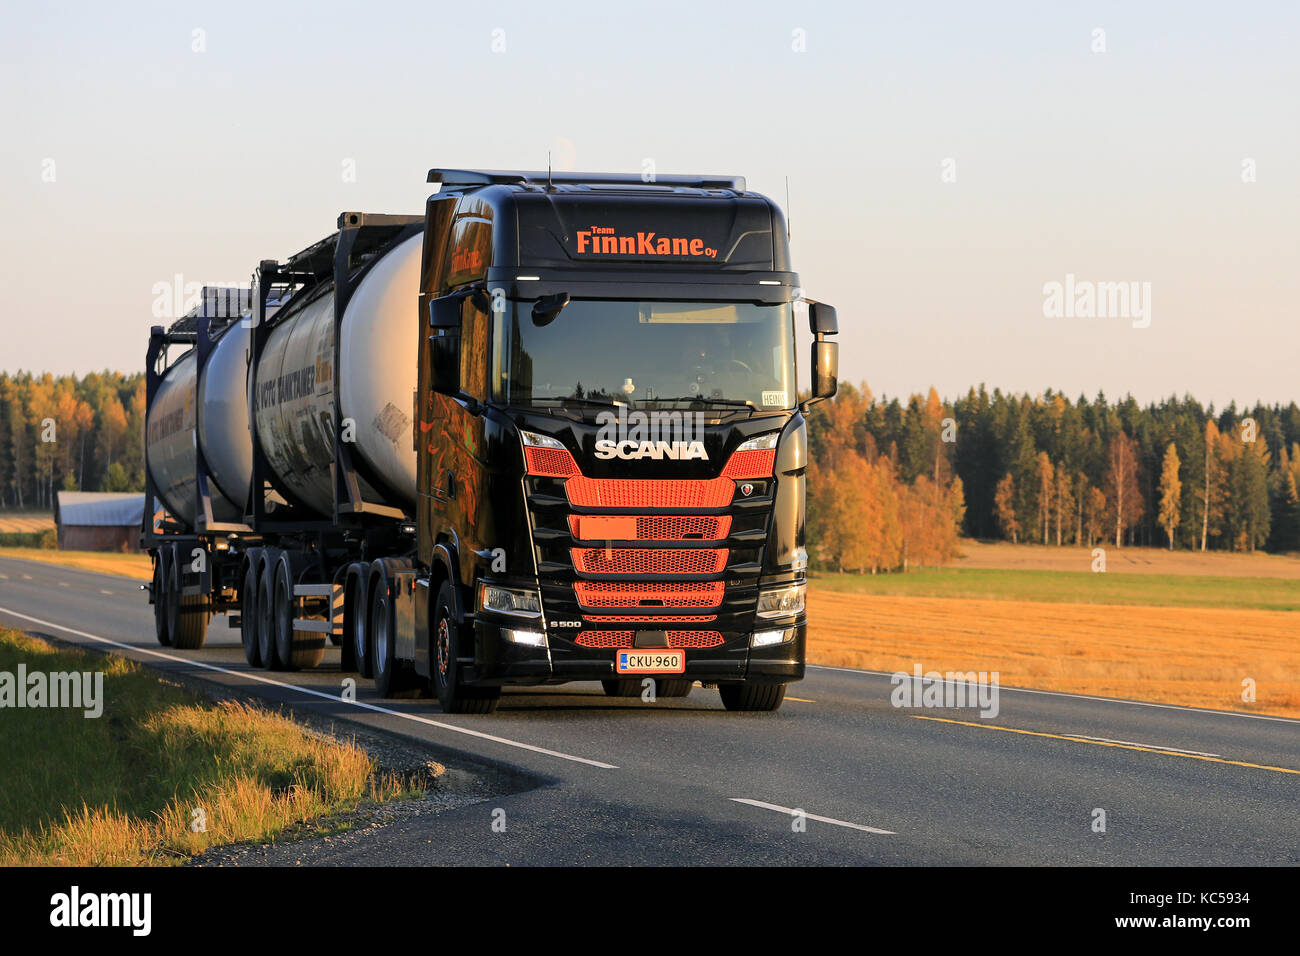 Humppila, Finnland - 29. September 2017: orange und schwarz nächste generation Scania s 500 von finnkane Oy Transporte Container entlang der Landstraße bei sunse Stockfoto